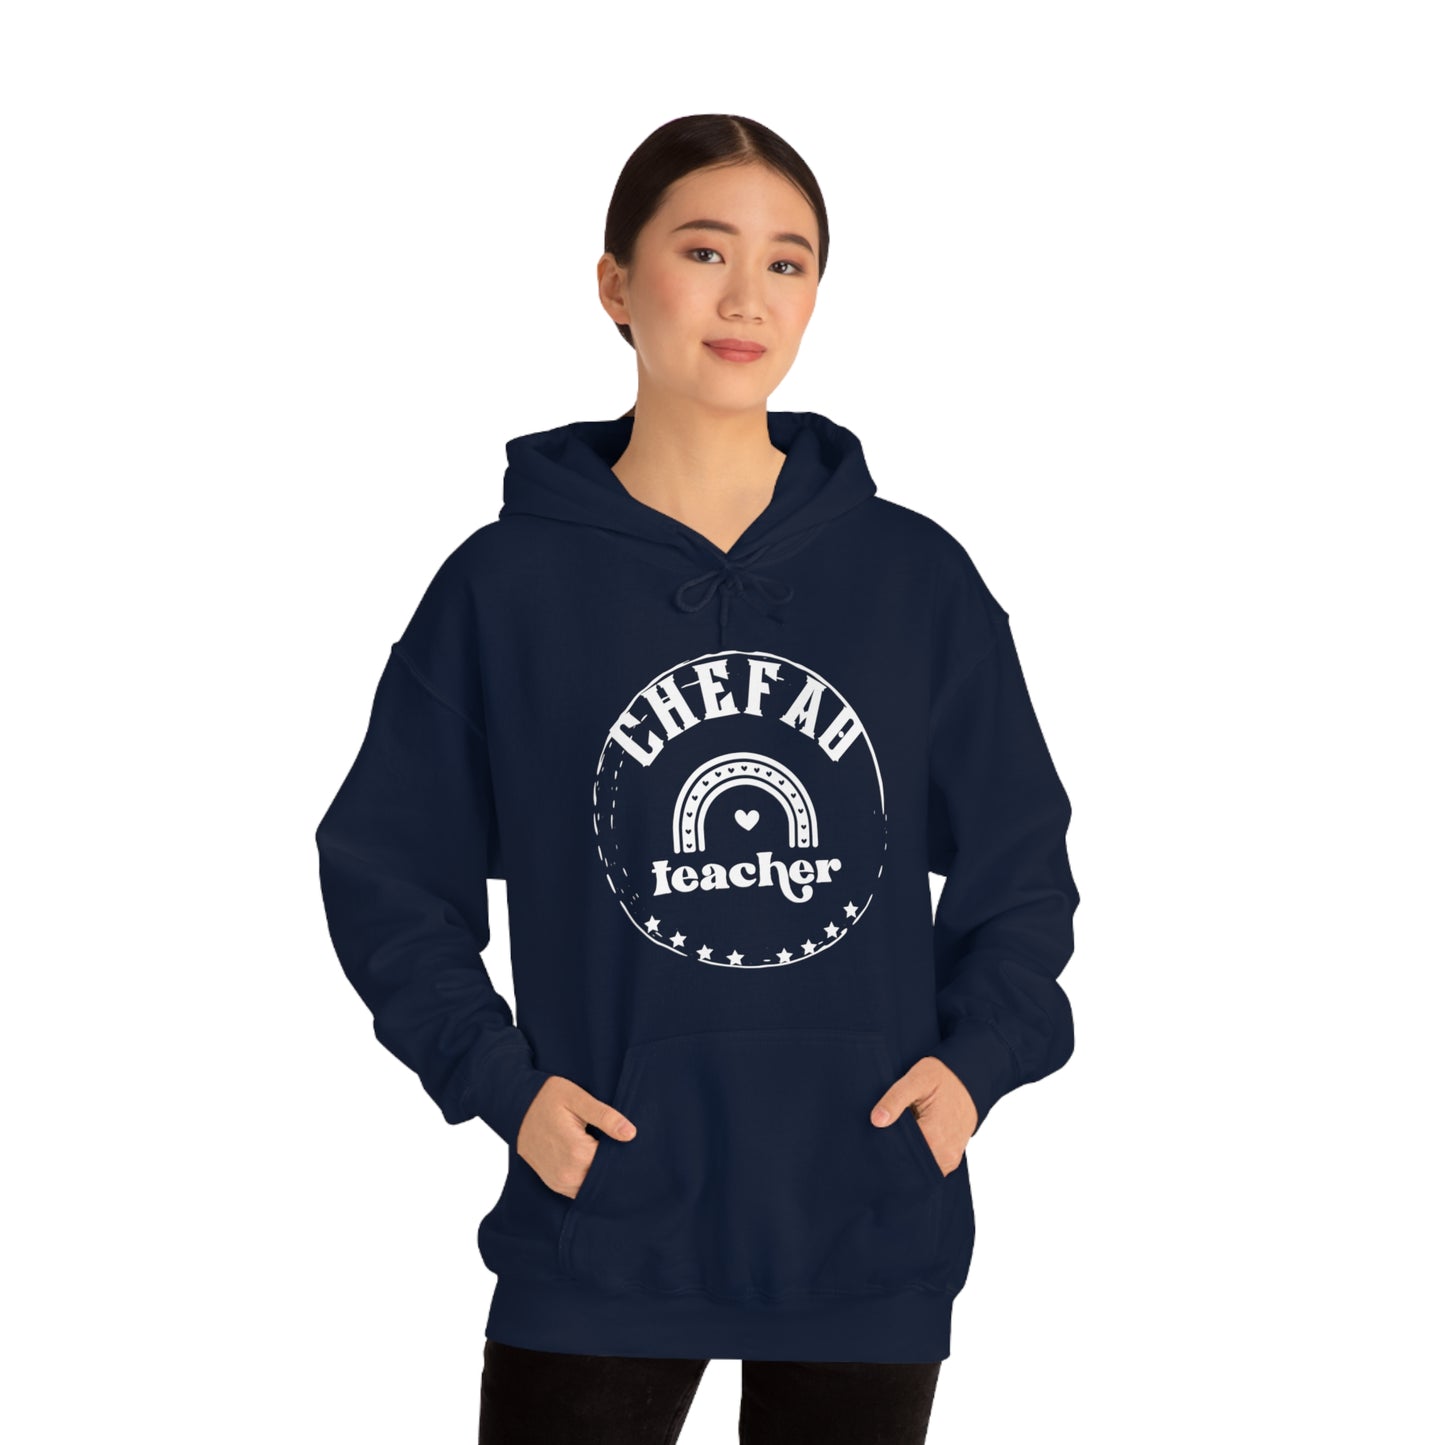 Chefao Teacher III, Unisex Heavy Blend Hooded Sweatshirt